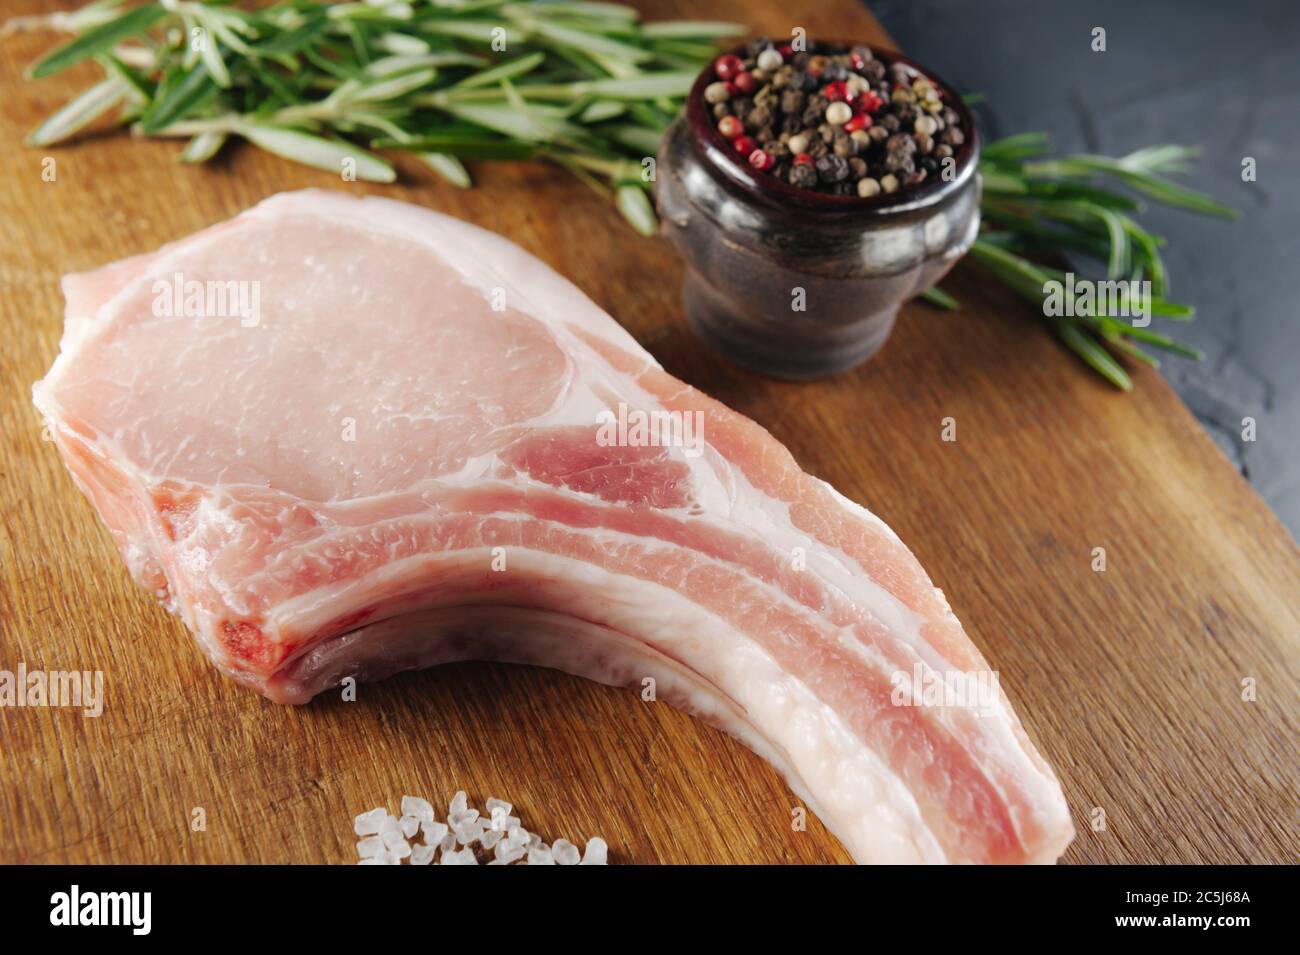 un bel pezzo di carne cruda con spezie su un asse di legno con sale e pepe Foto Stock